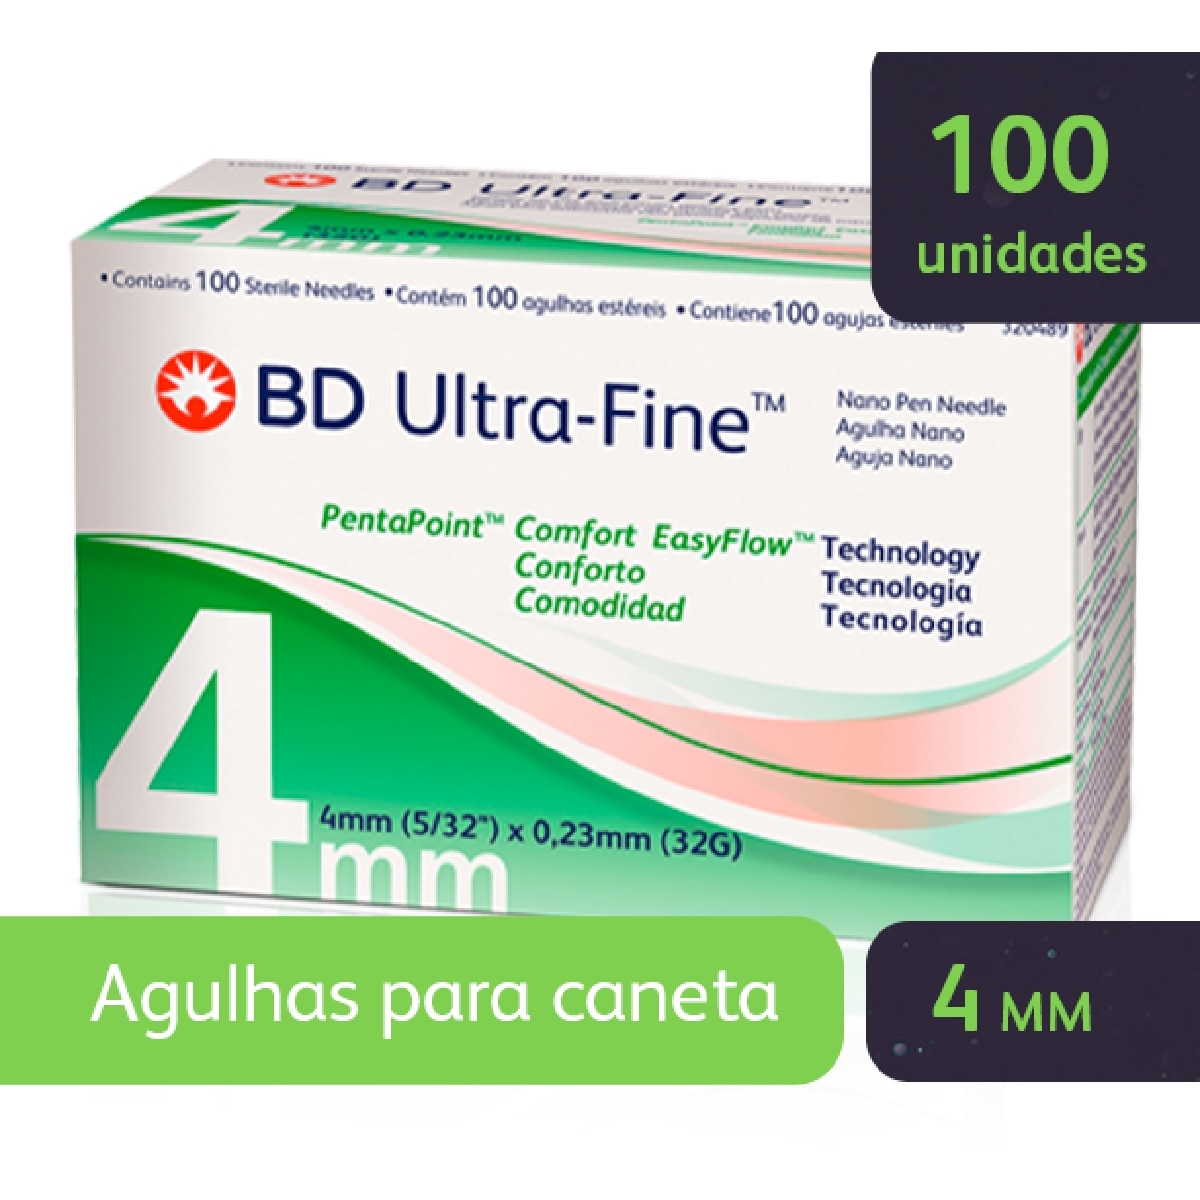 Agulhas para Caneta de Insulina BD Ultra-Fine Easyflow 4mm 100 Unidades